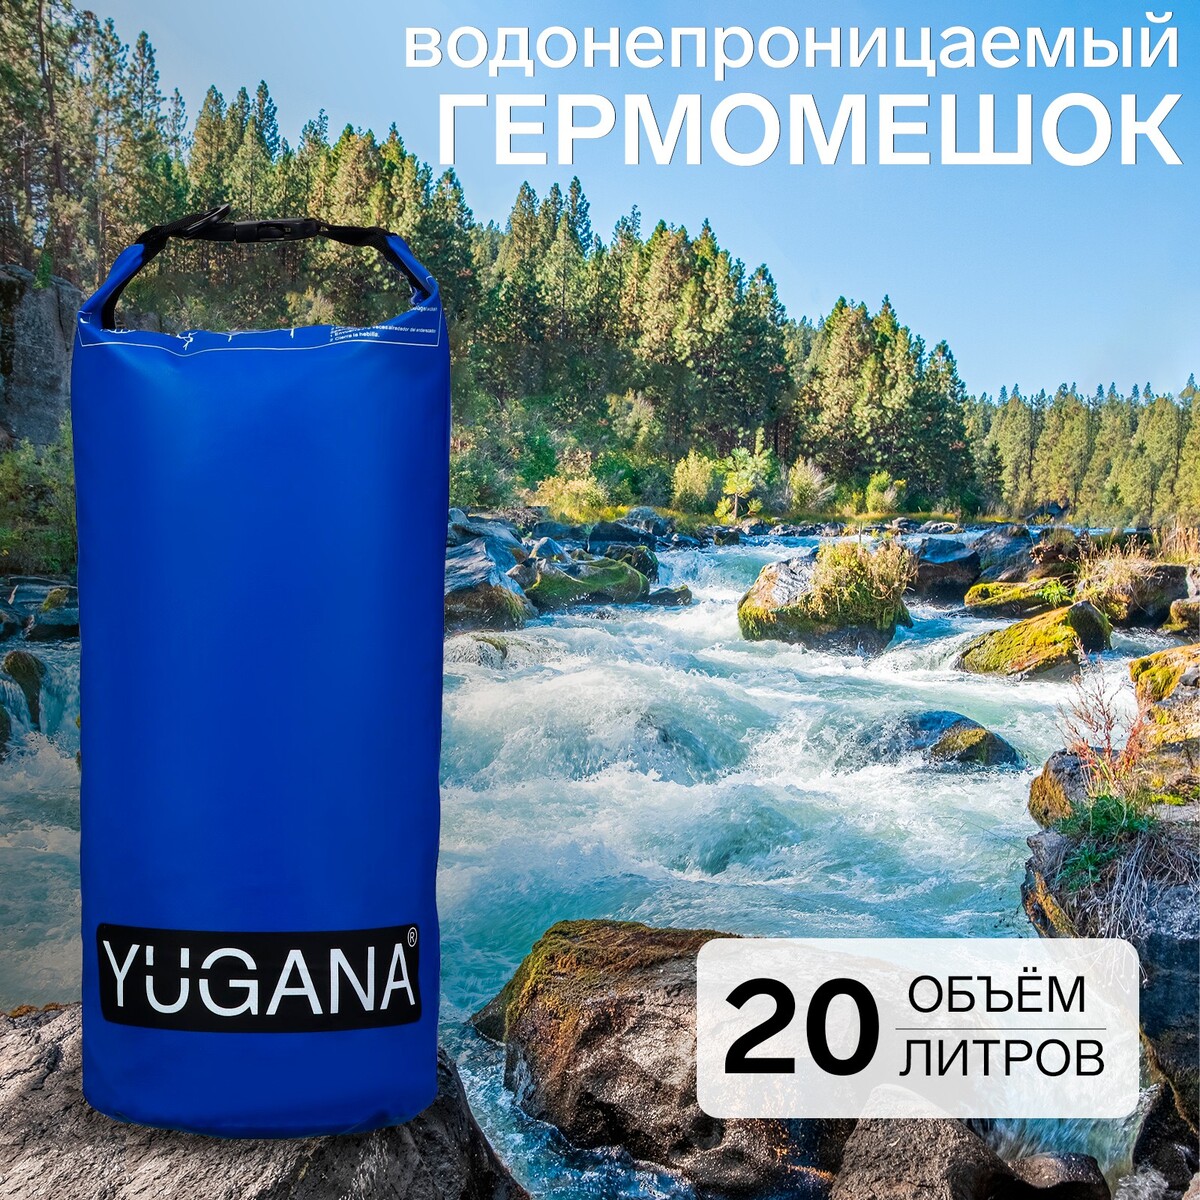 фото Гермомешок yugana, пвх, водонепроницаемый 20 литров, один ремень, синий